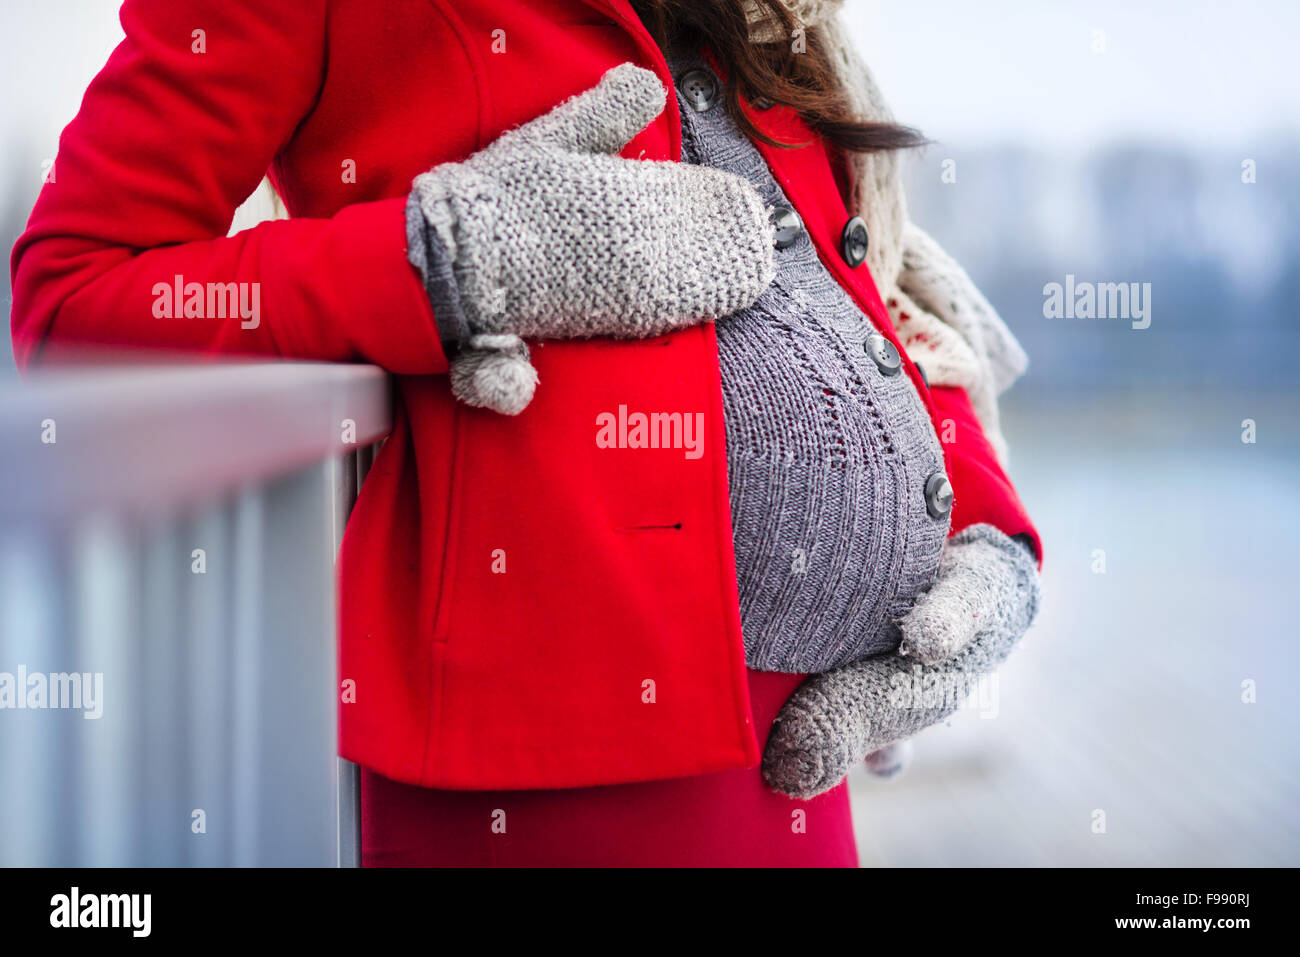 Détail de méconnaissable pregnant woman's belly en hiver Banque D'Images